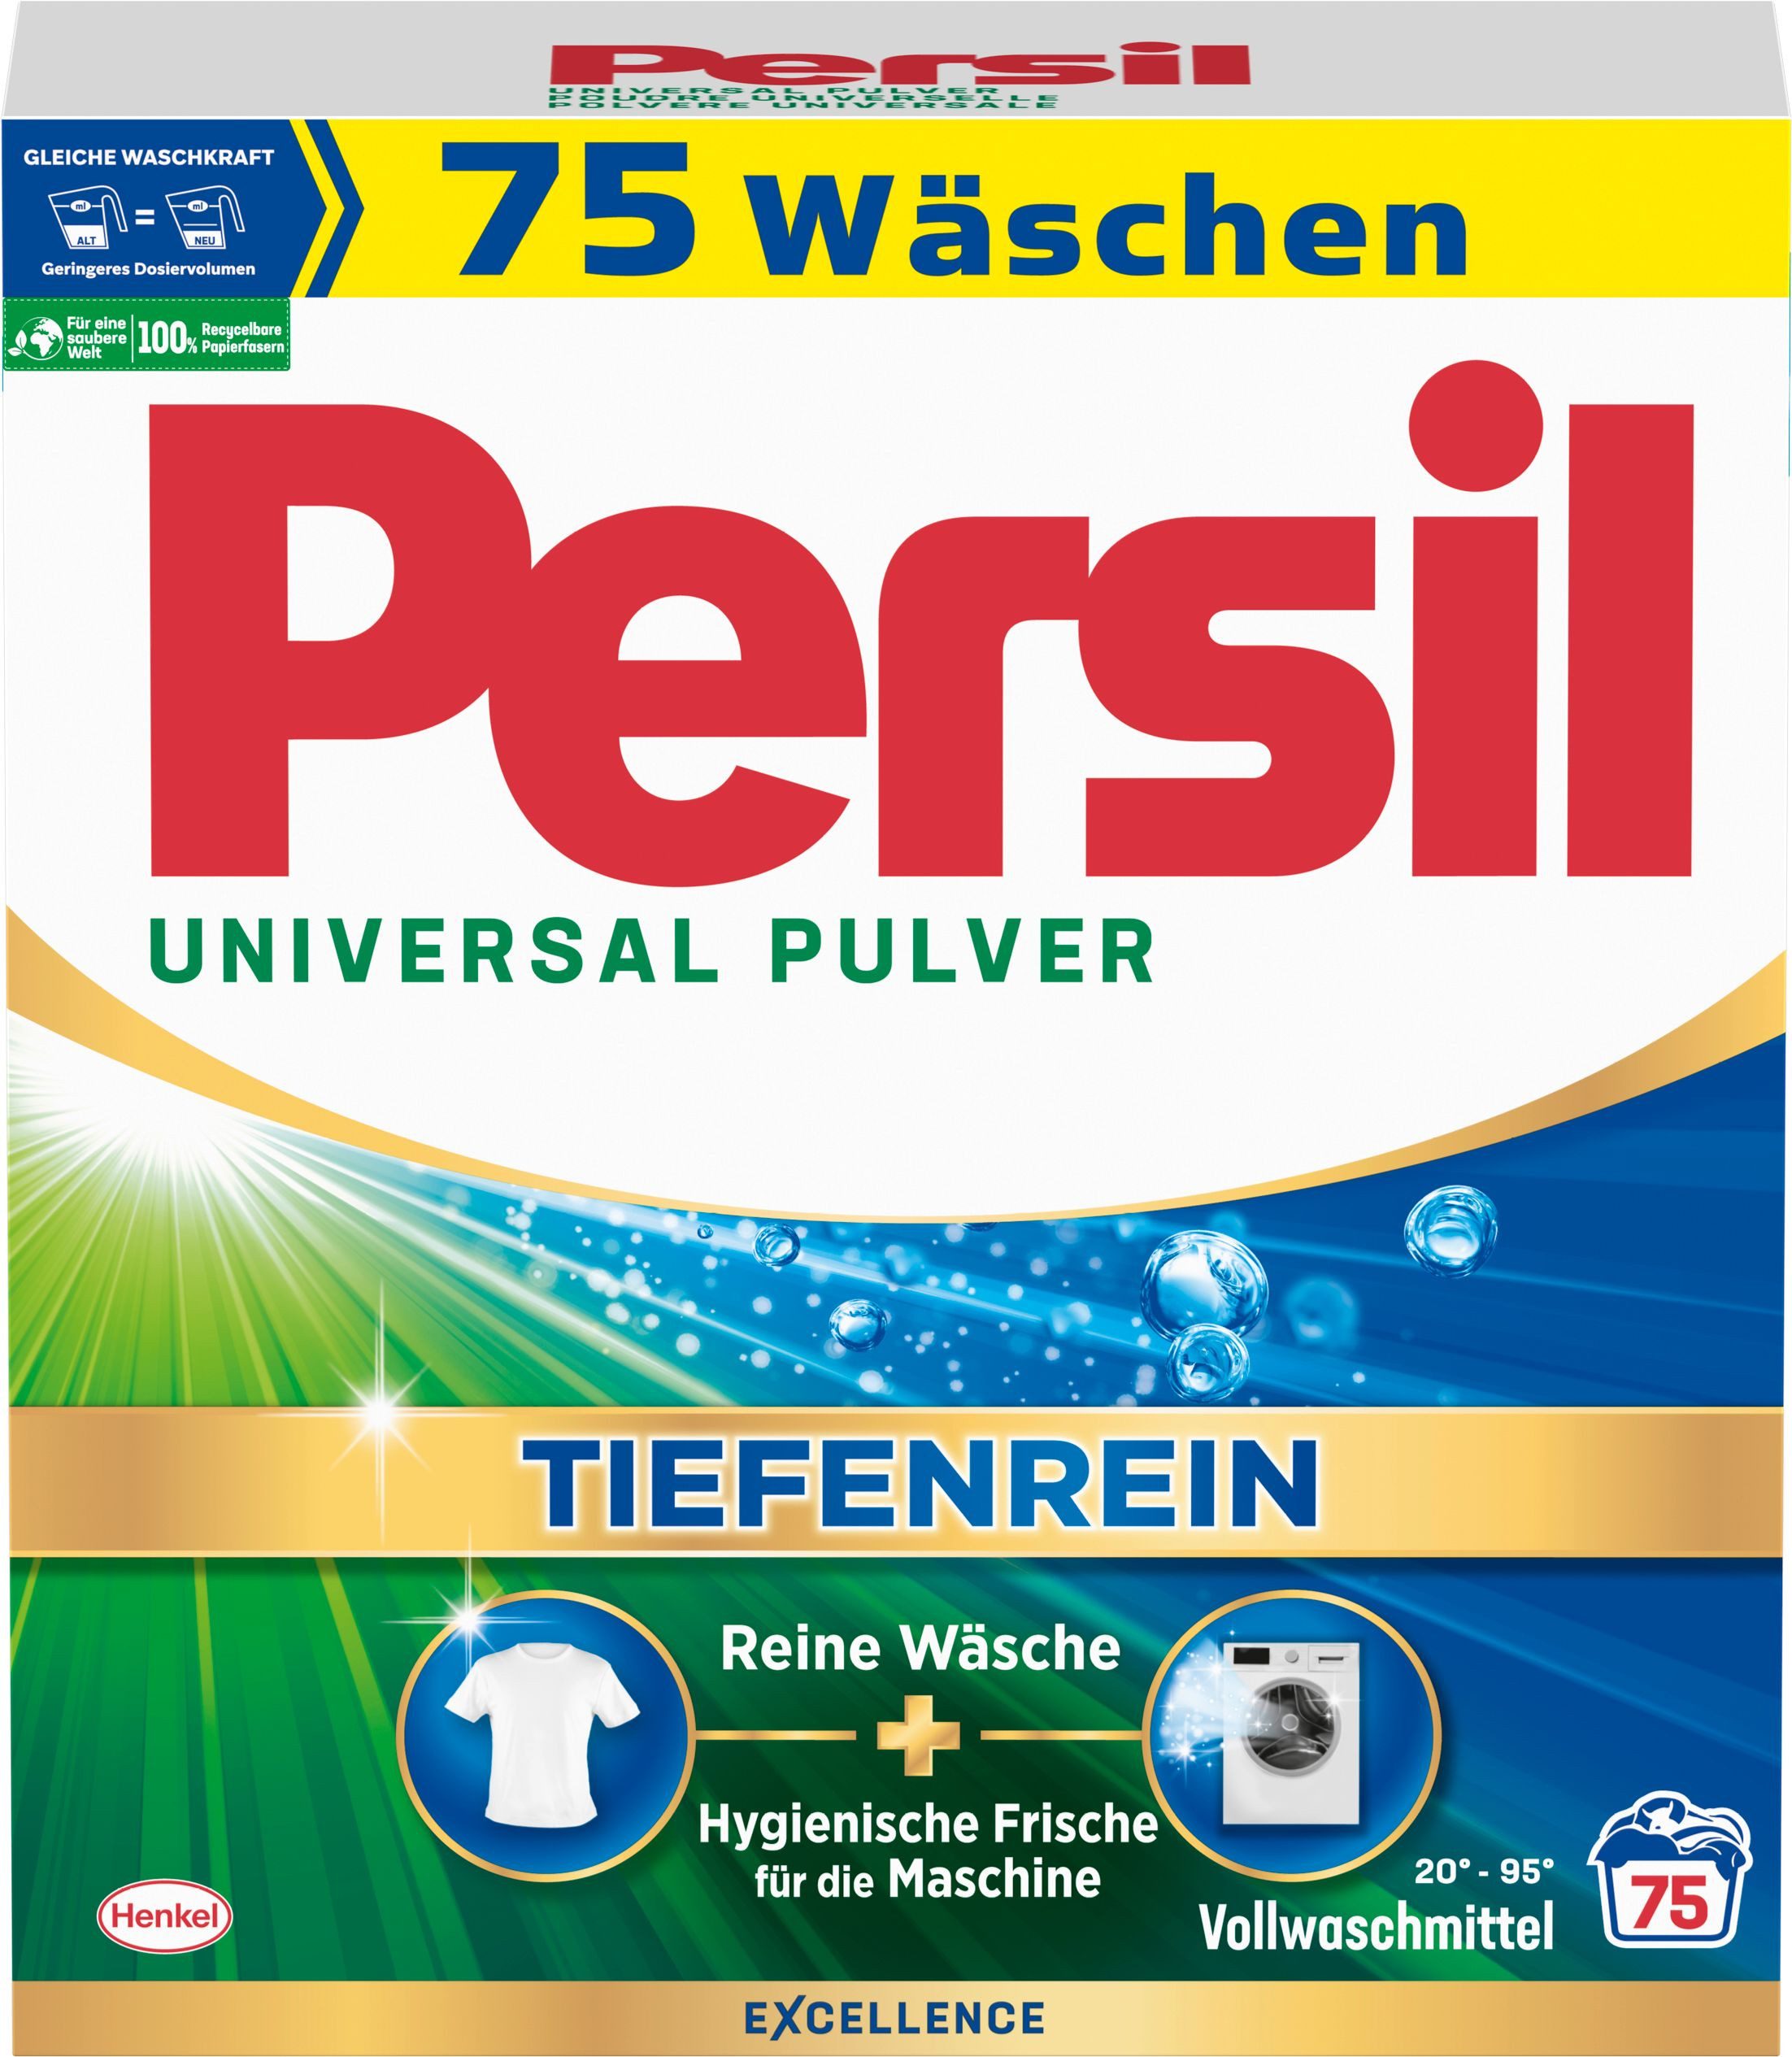 Persil Universal Pulver Tiefenrein 4,5kg Vollwaschmittel (1-St. 75 Waschladungen für reine Wäsche und hygienische Frische für die Maschine)